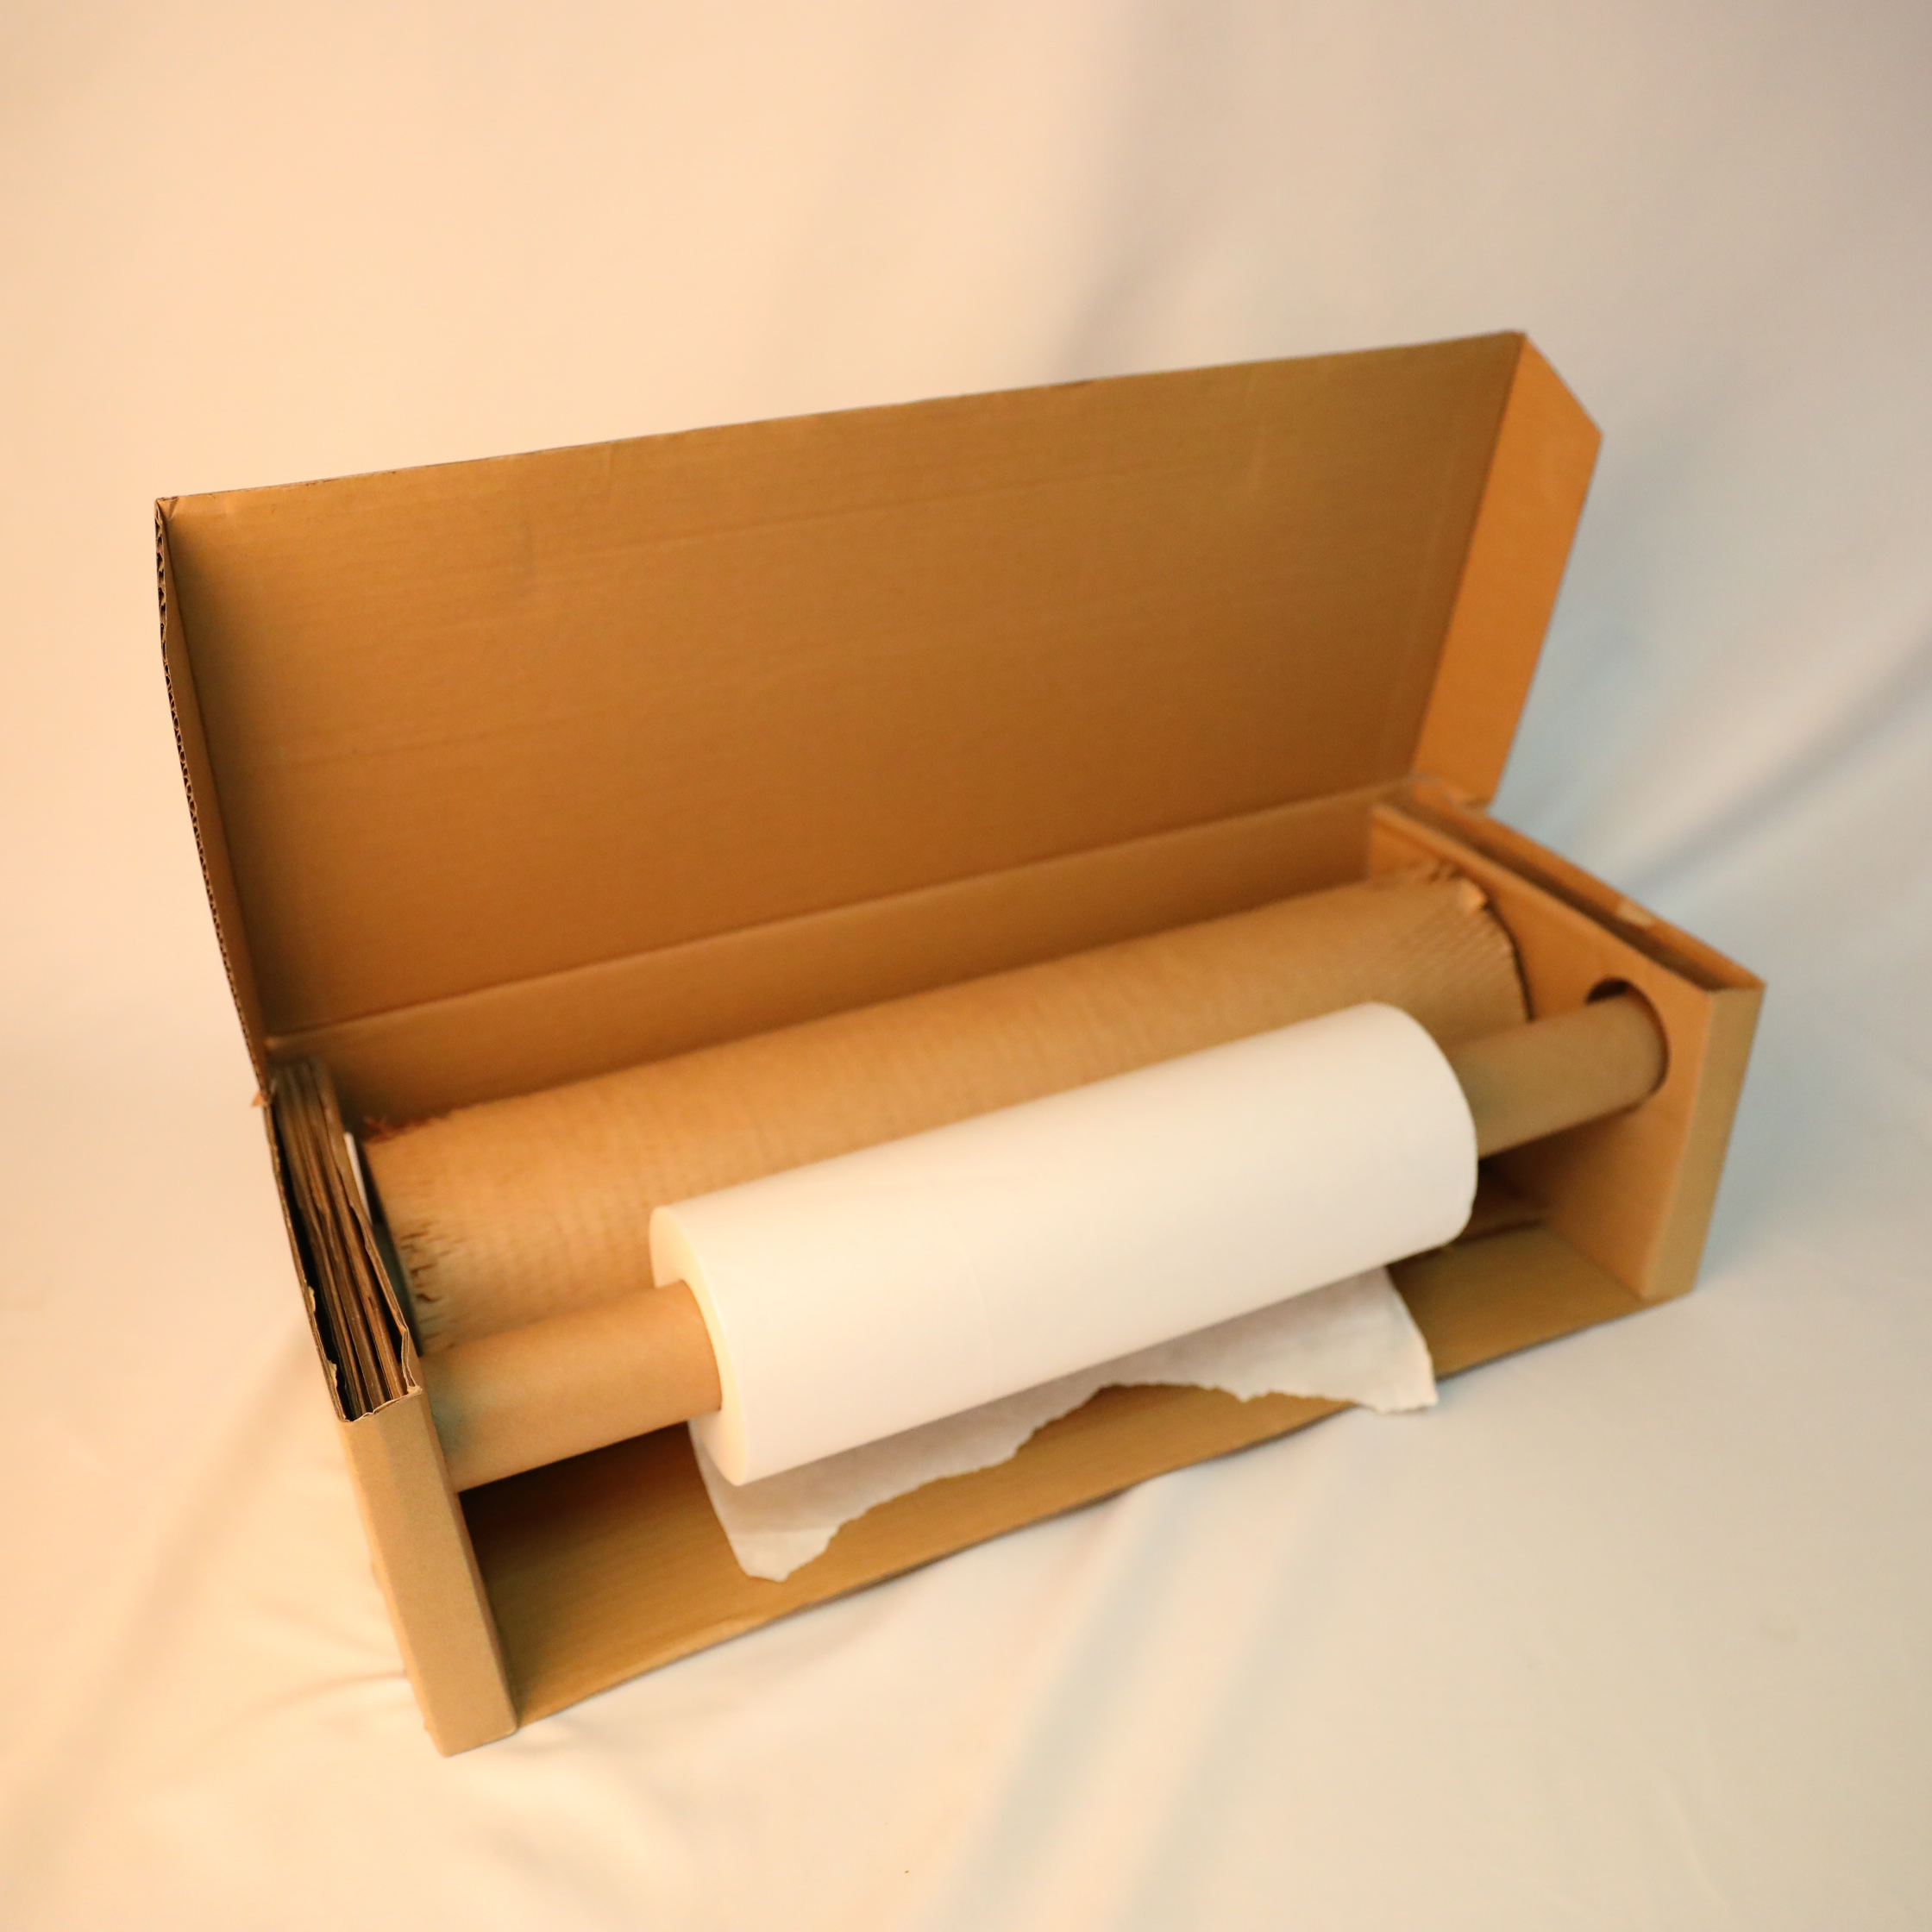 Rollos de papel de nido de abeja reciclable para productos de embalaje